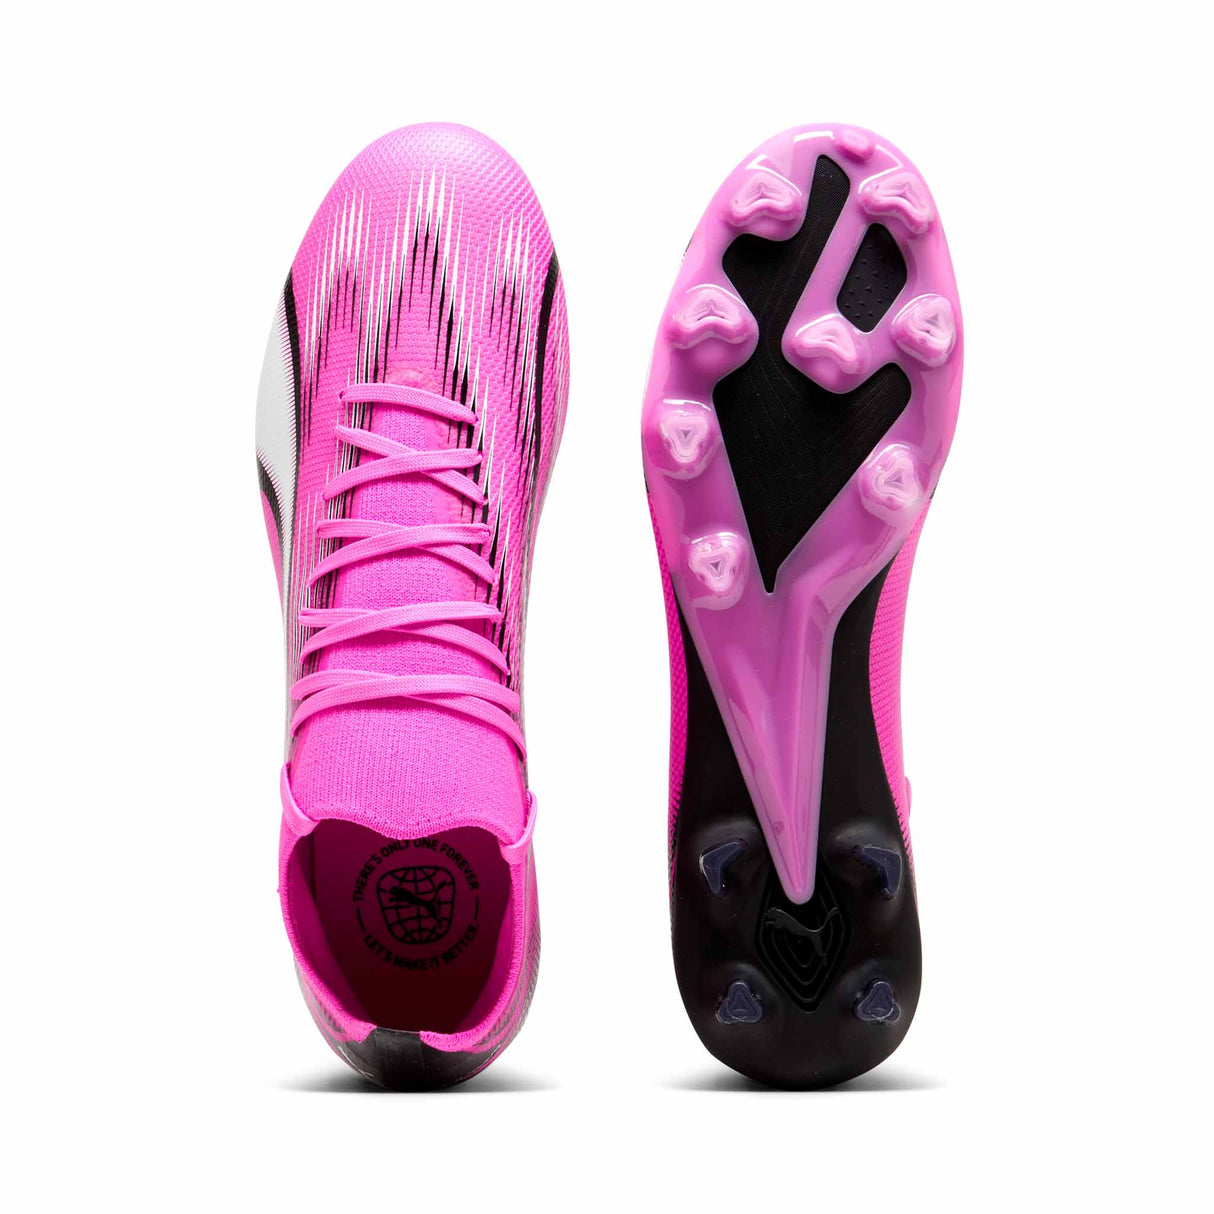 Puma Ultra Match FG/AG chaussures de soccer - Poison Pink / Puma White / Puma Black